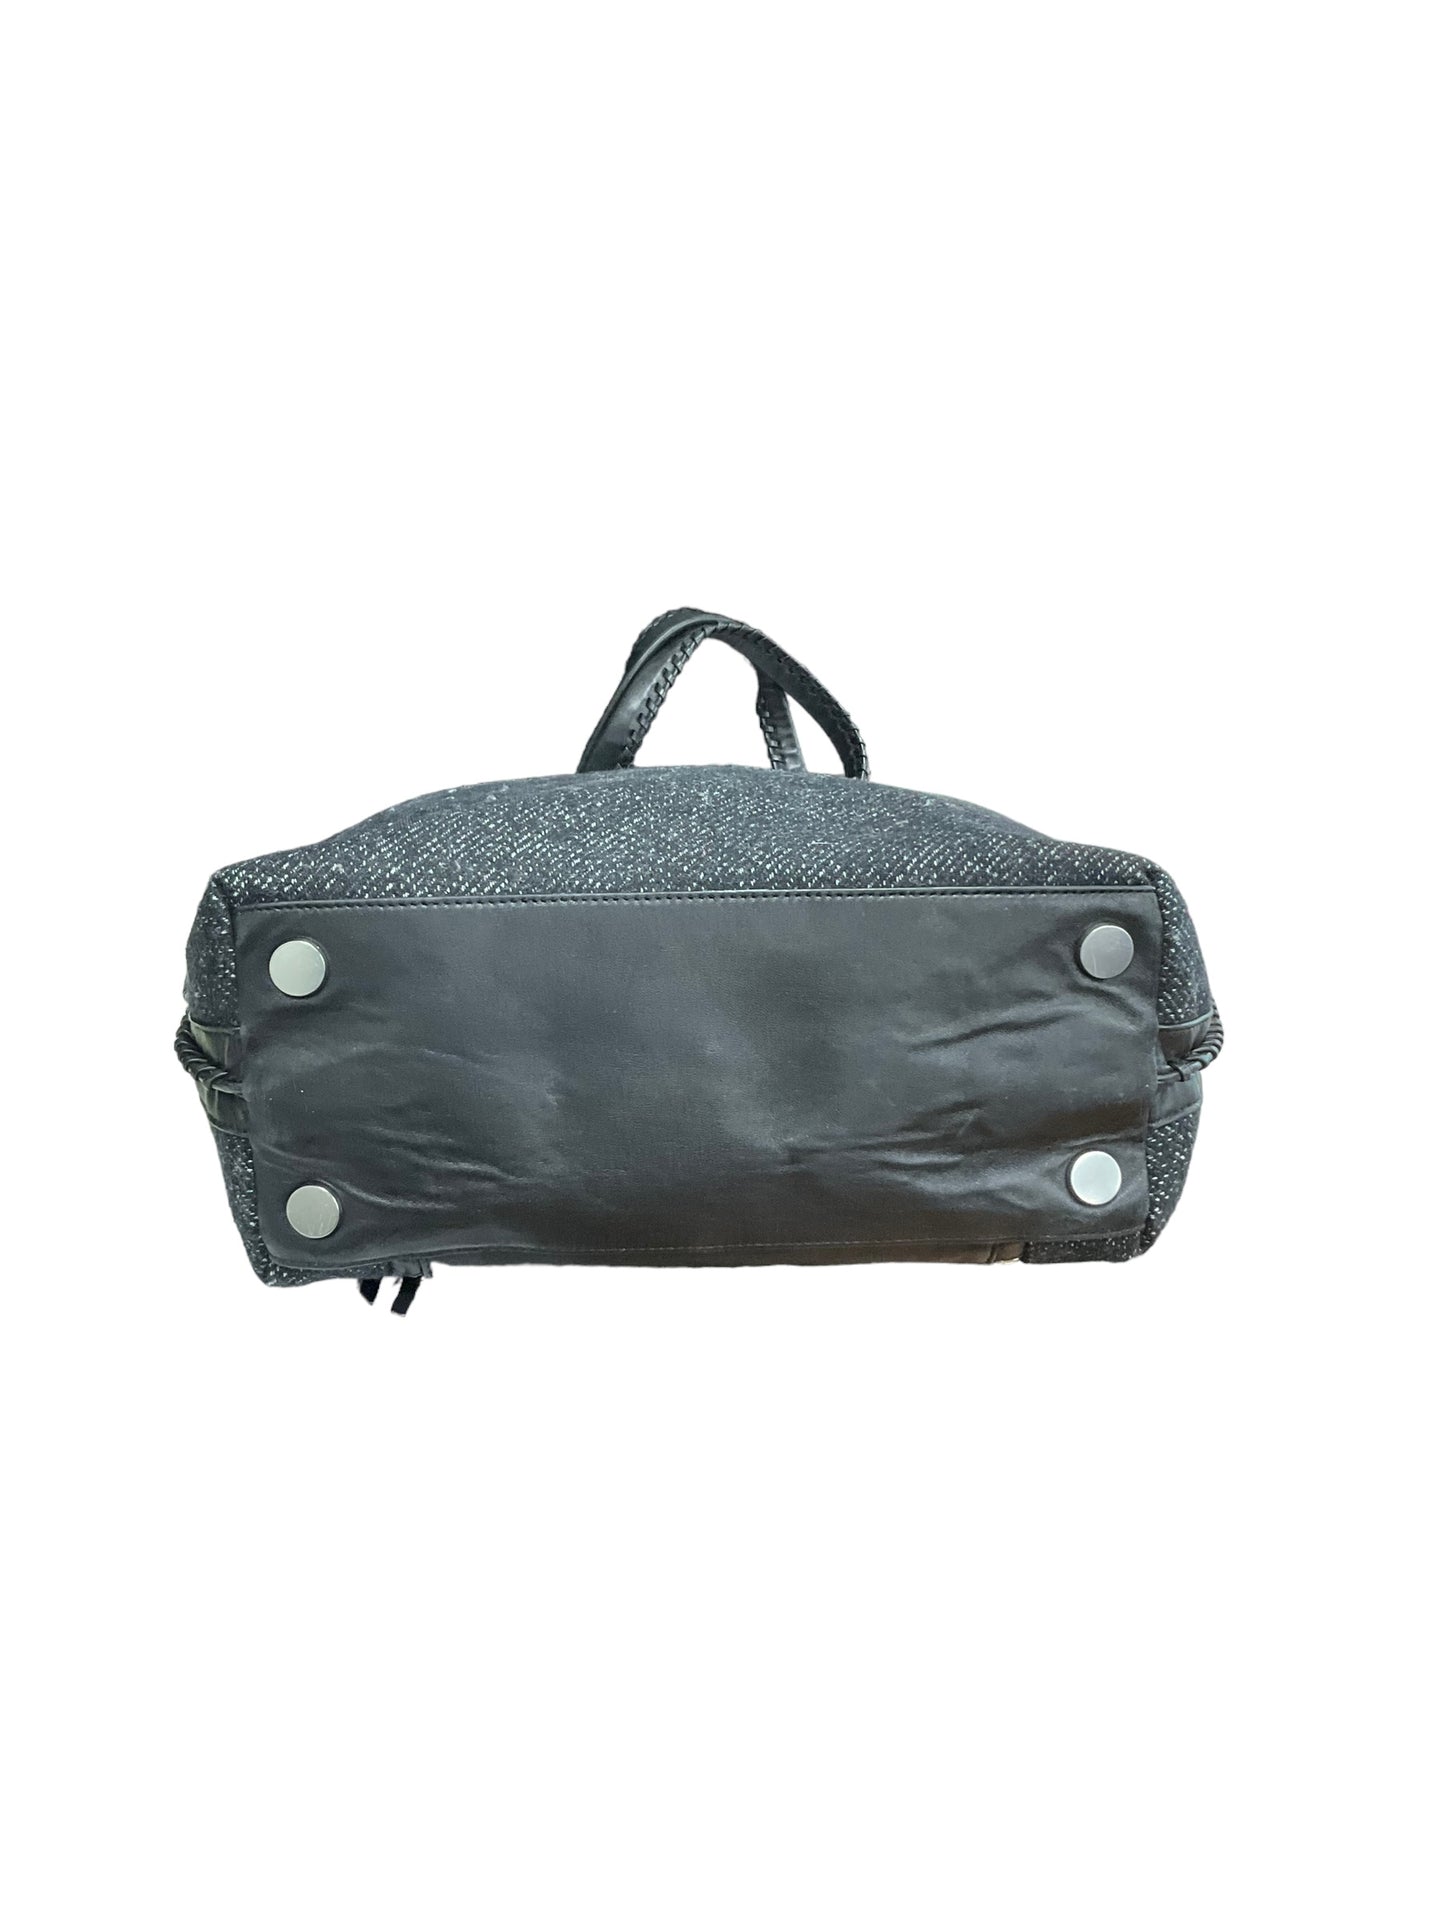 Handbag Designer By All Saints  Size: Large